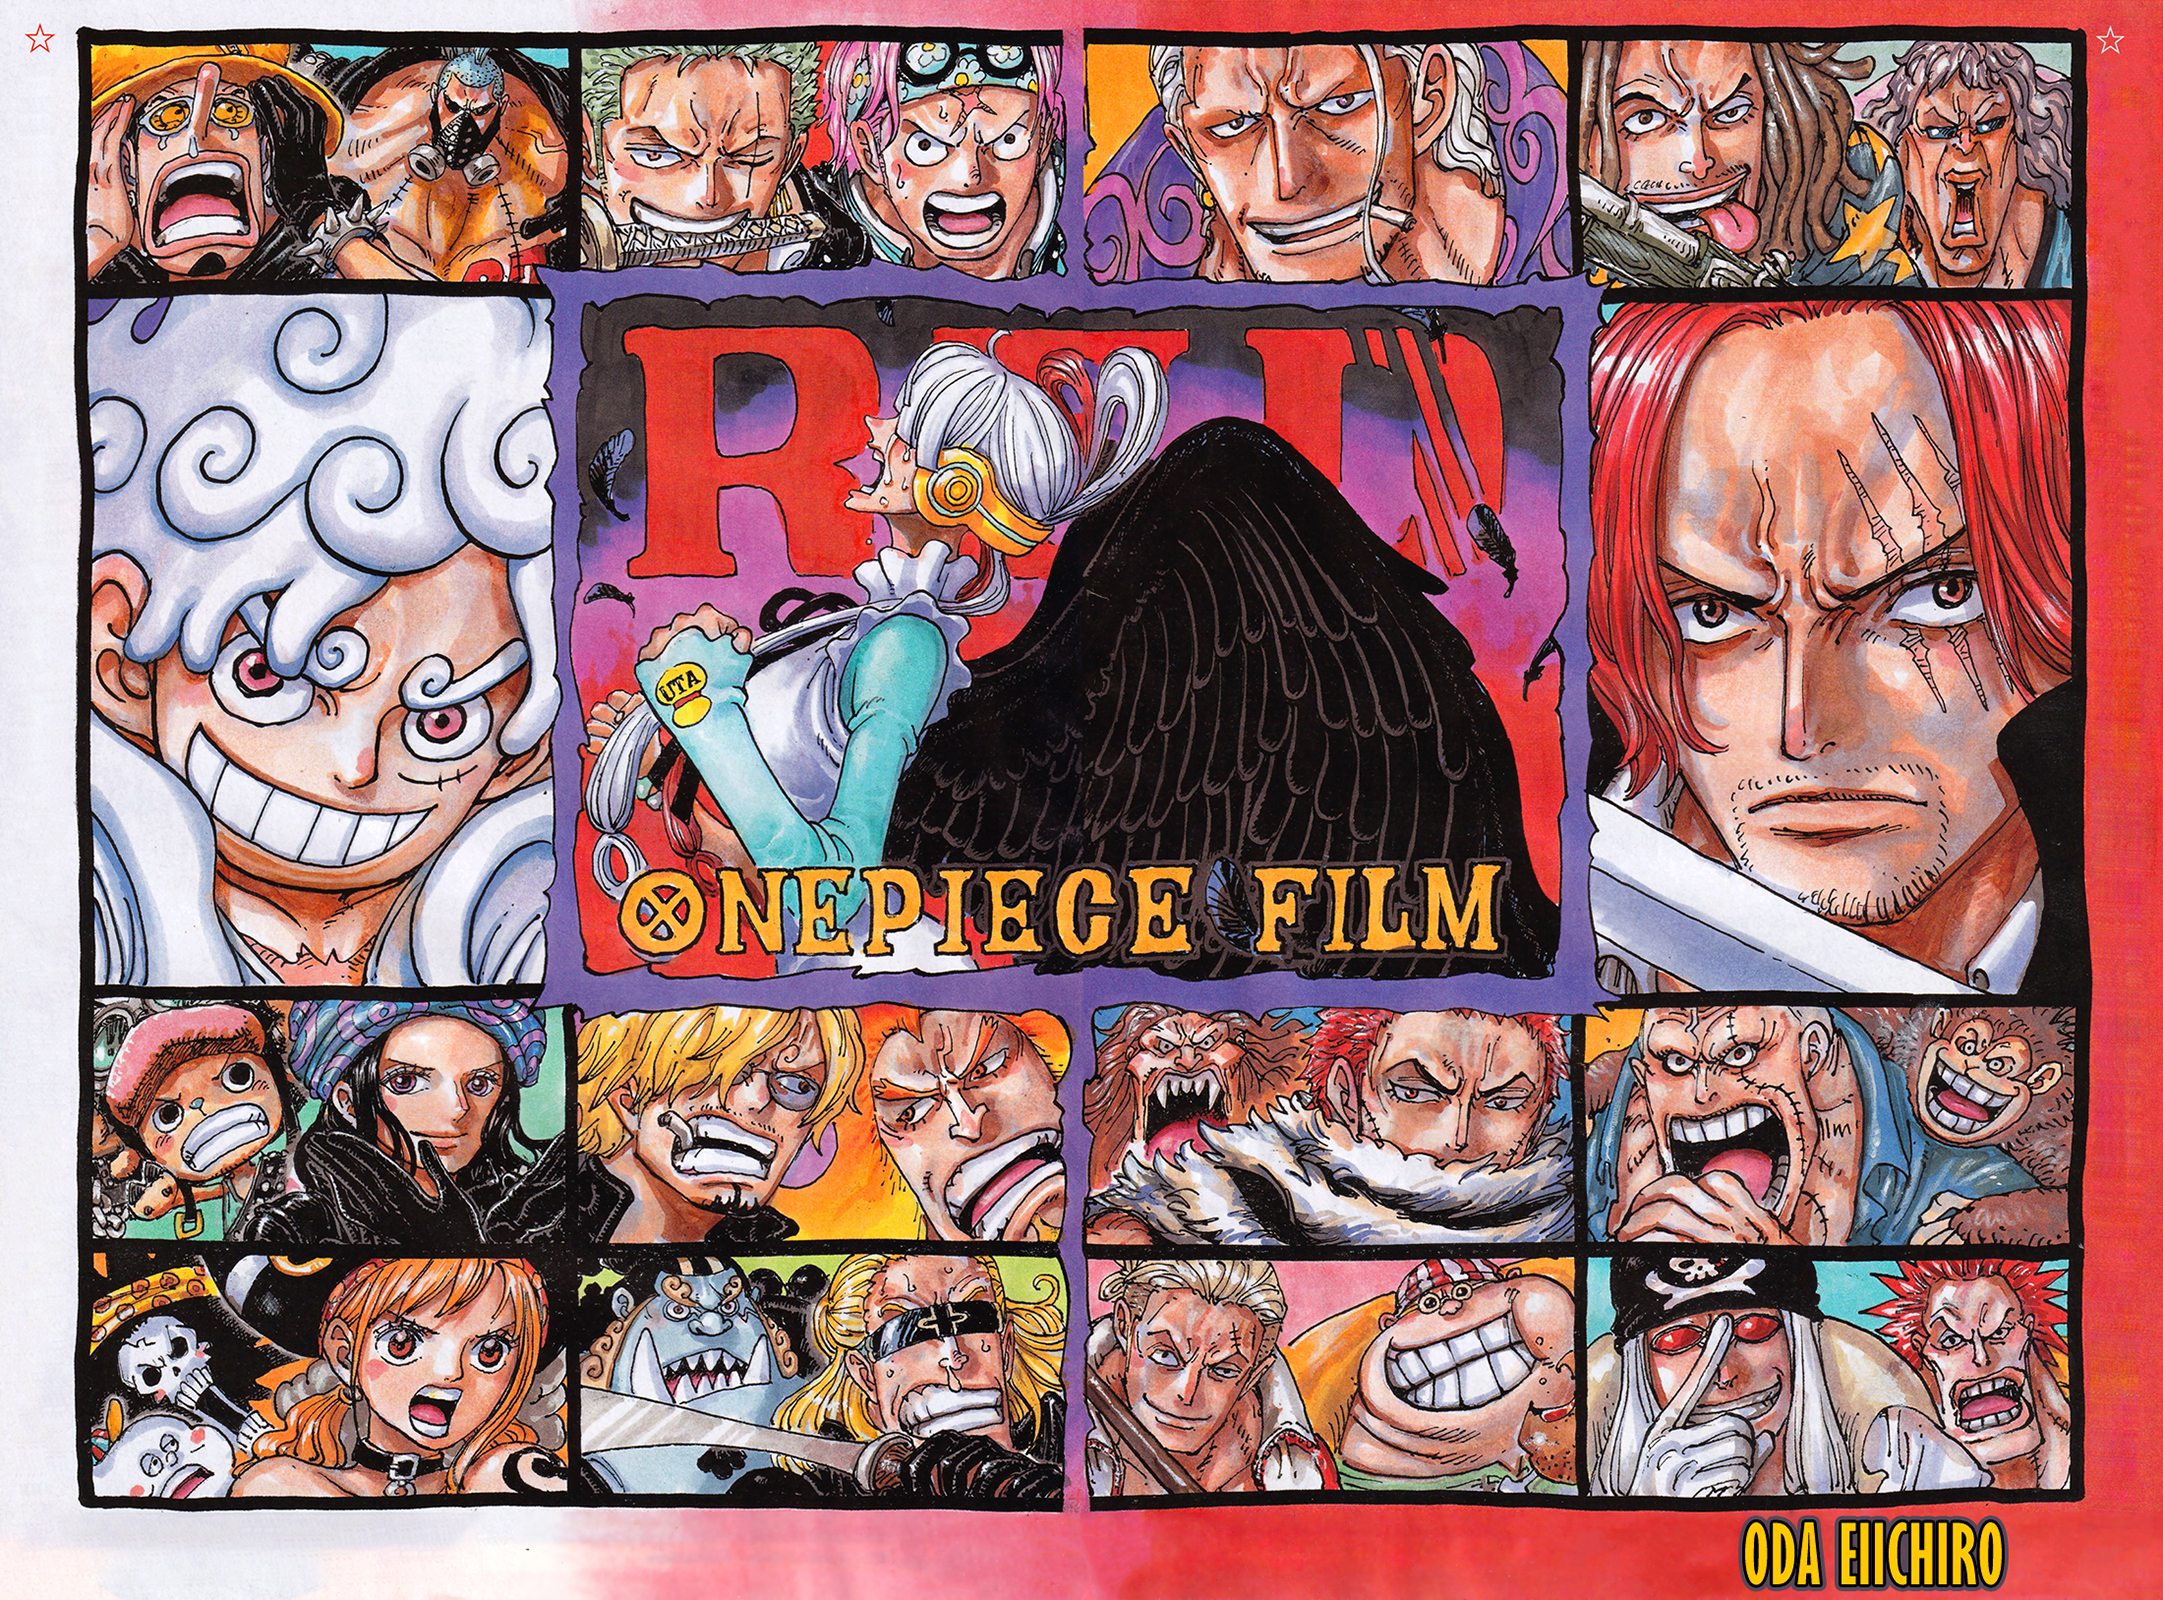 One Piece 1046 Bölüm izle - Türk Anime